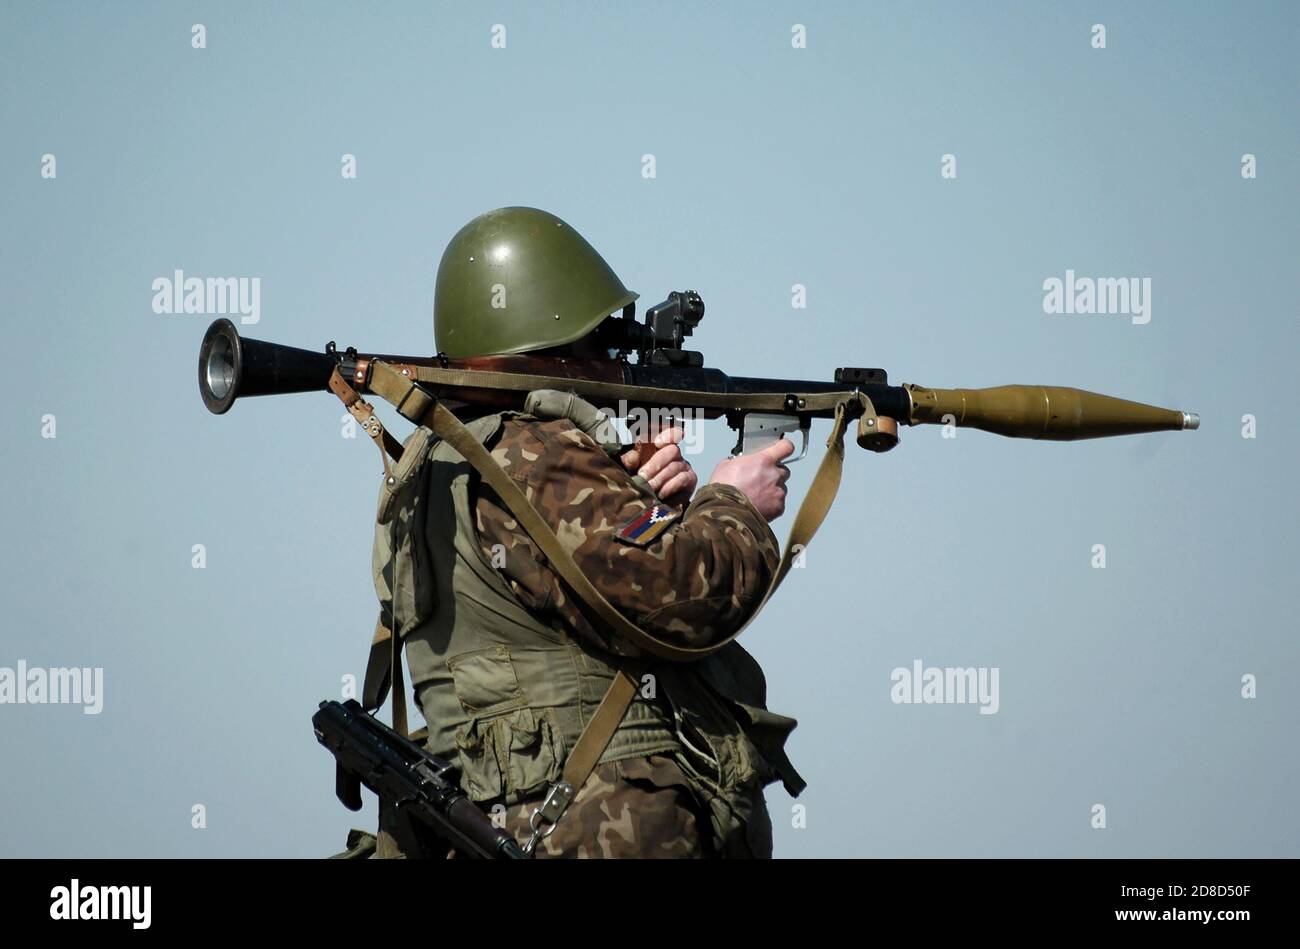 Soldat avec lance-grenade antichar et drapeau d'Artsakh, également connu sous le nom de République du Haut-Karabakh sur l'uniforme militaire. Collage. Banque D'Images